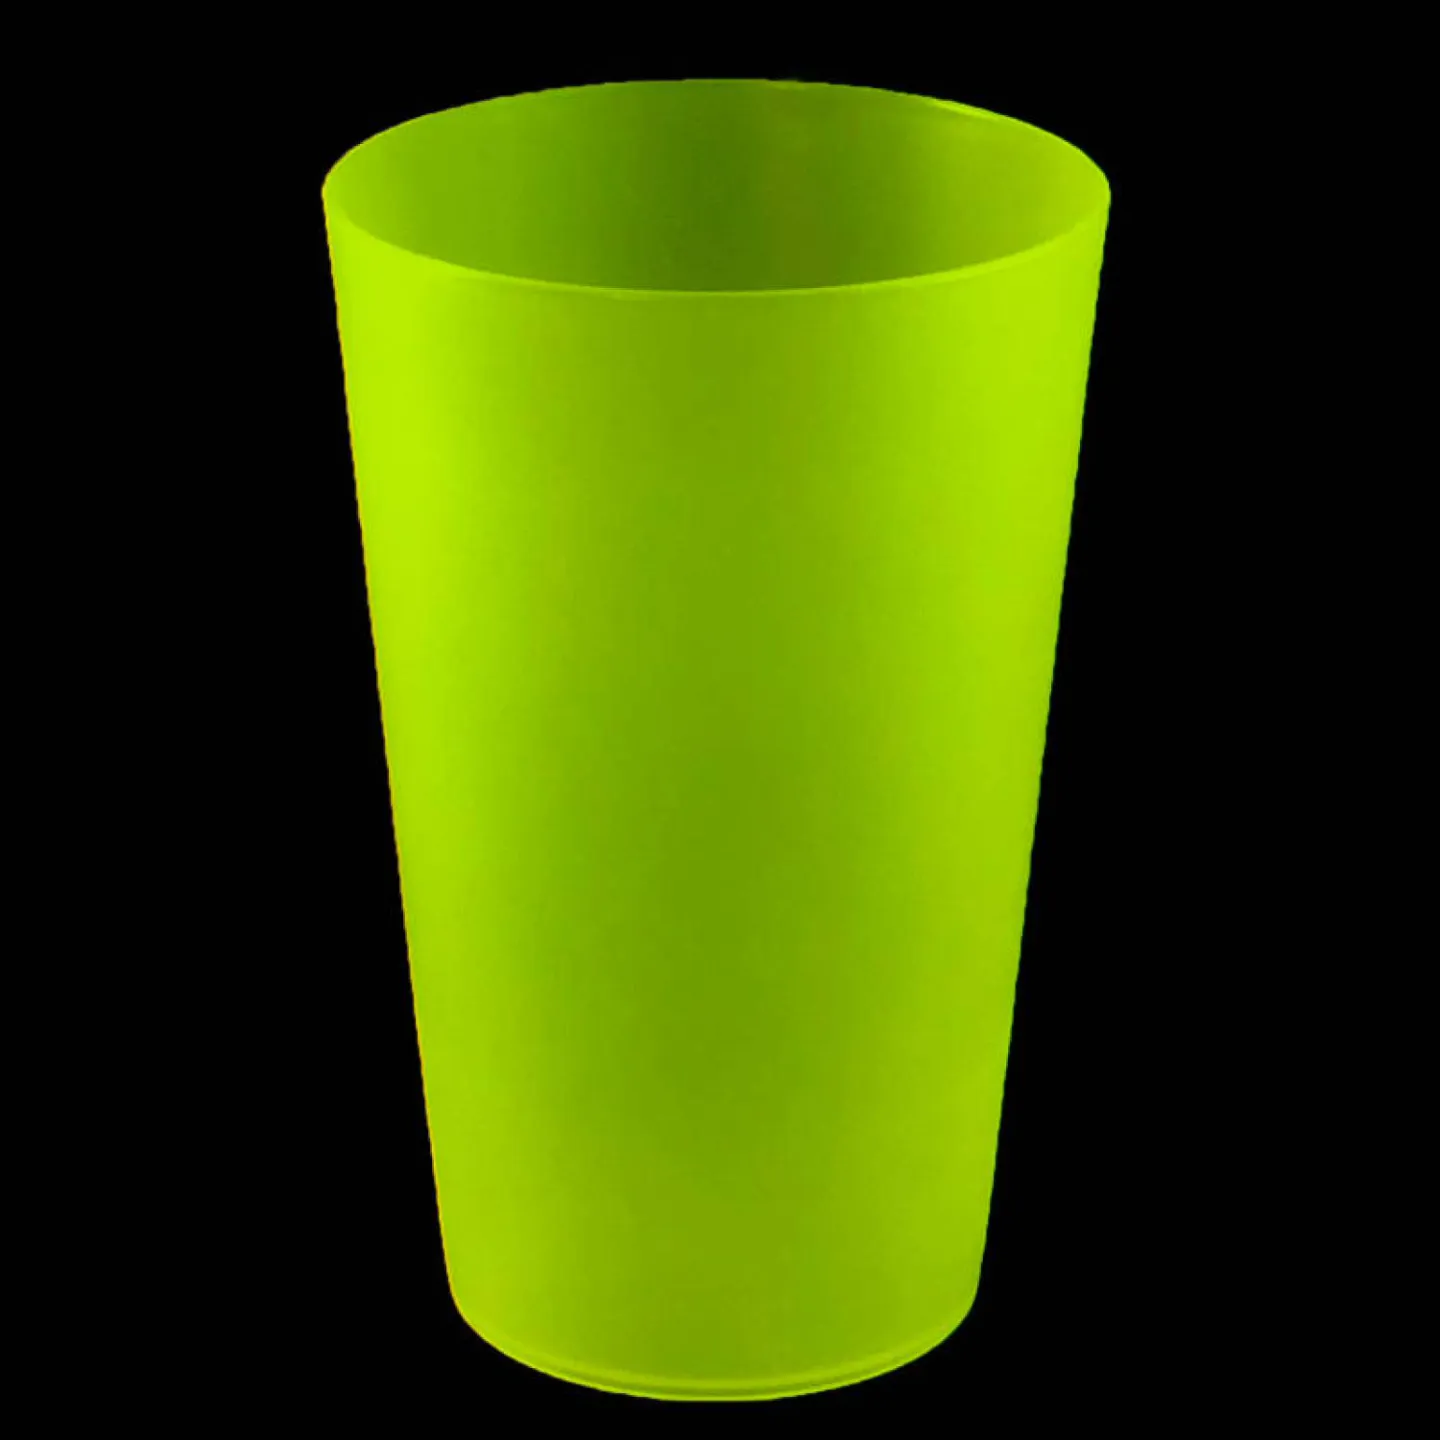 Eco kunststof glas groen.